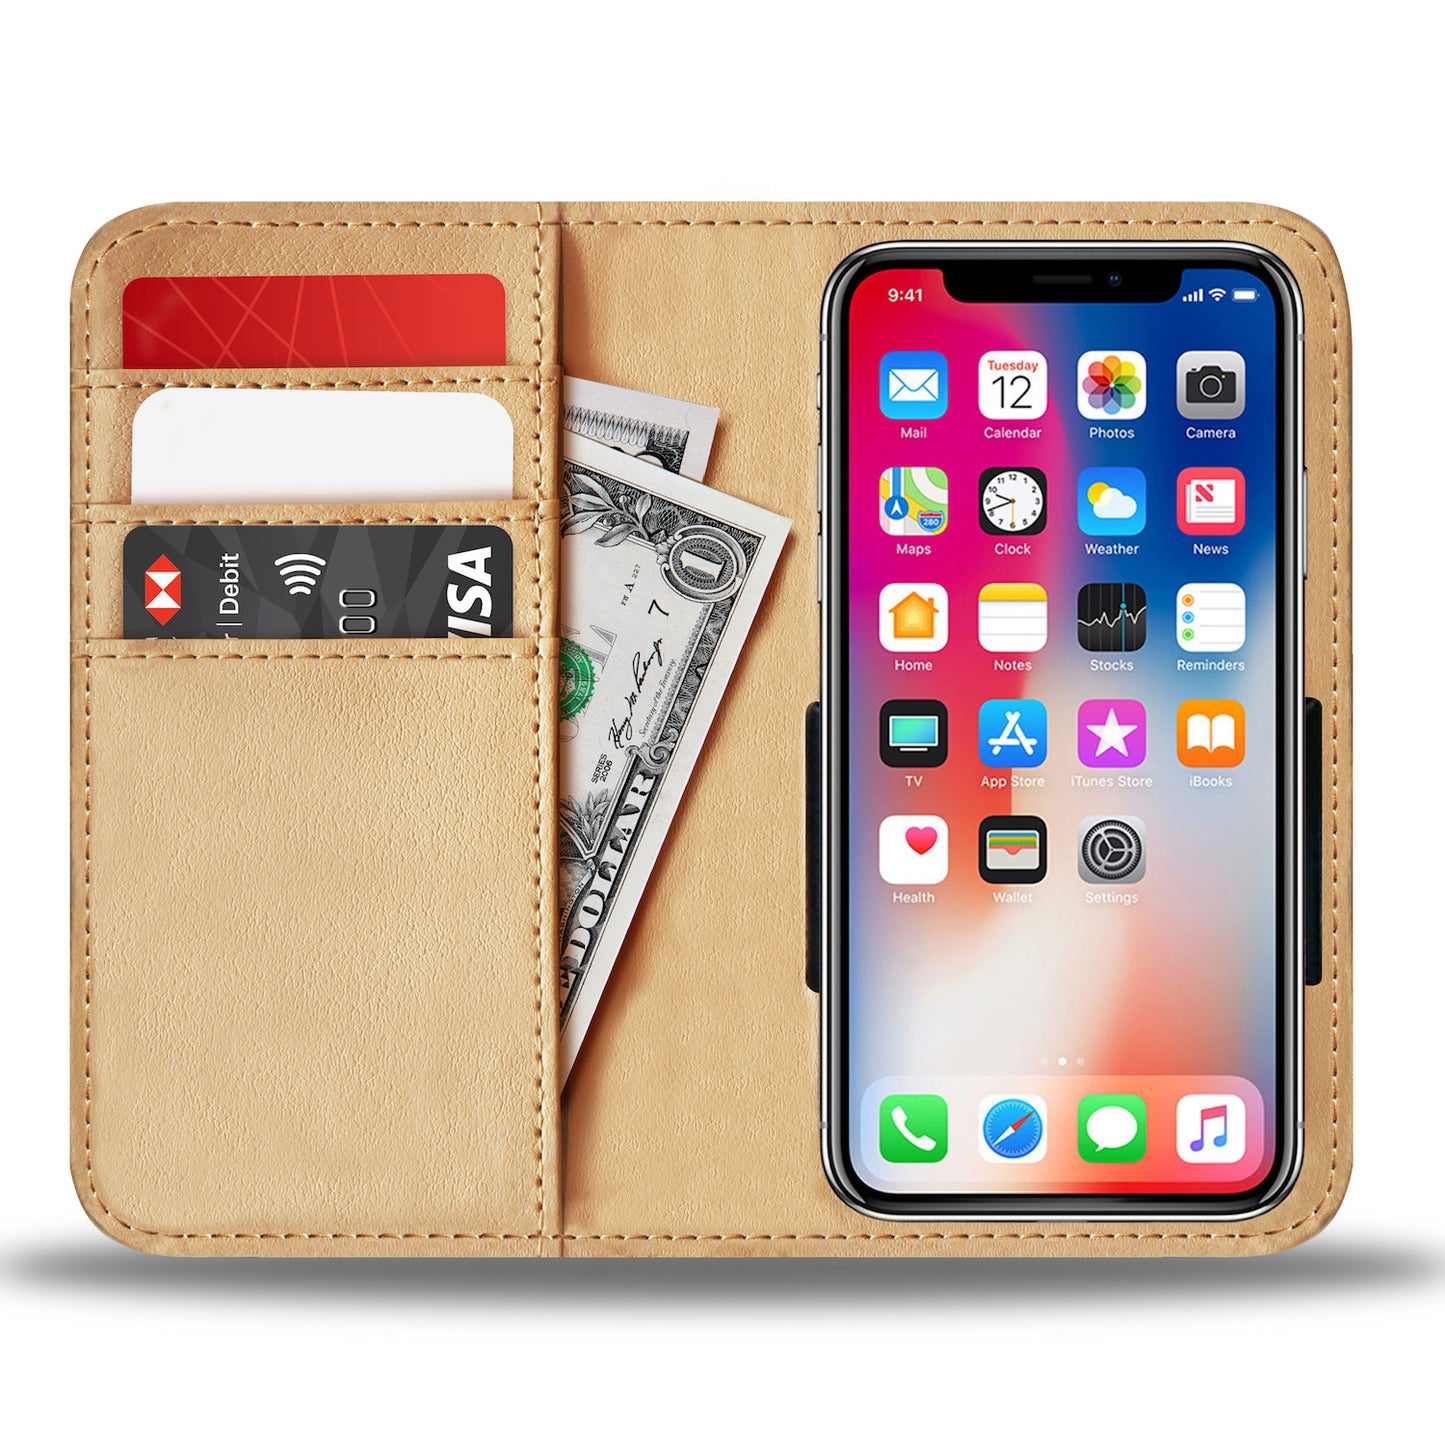 Set of 2 - Shouder bag + phone case wallet